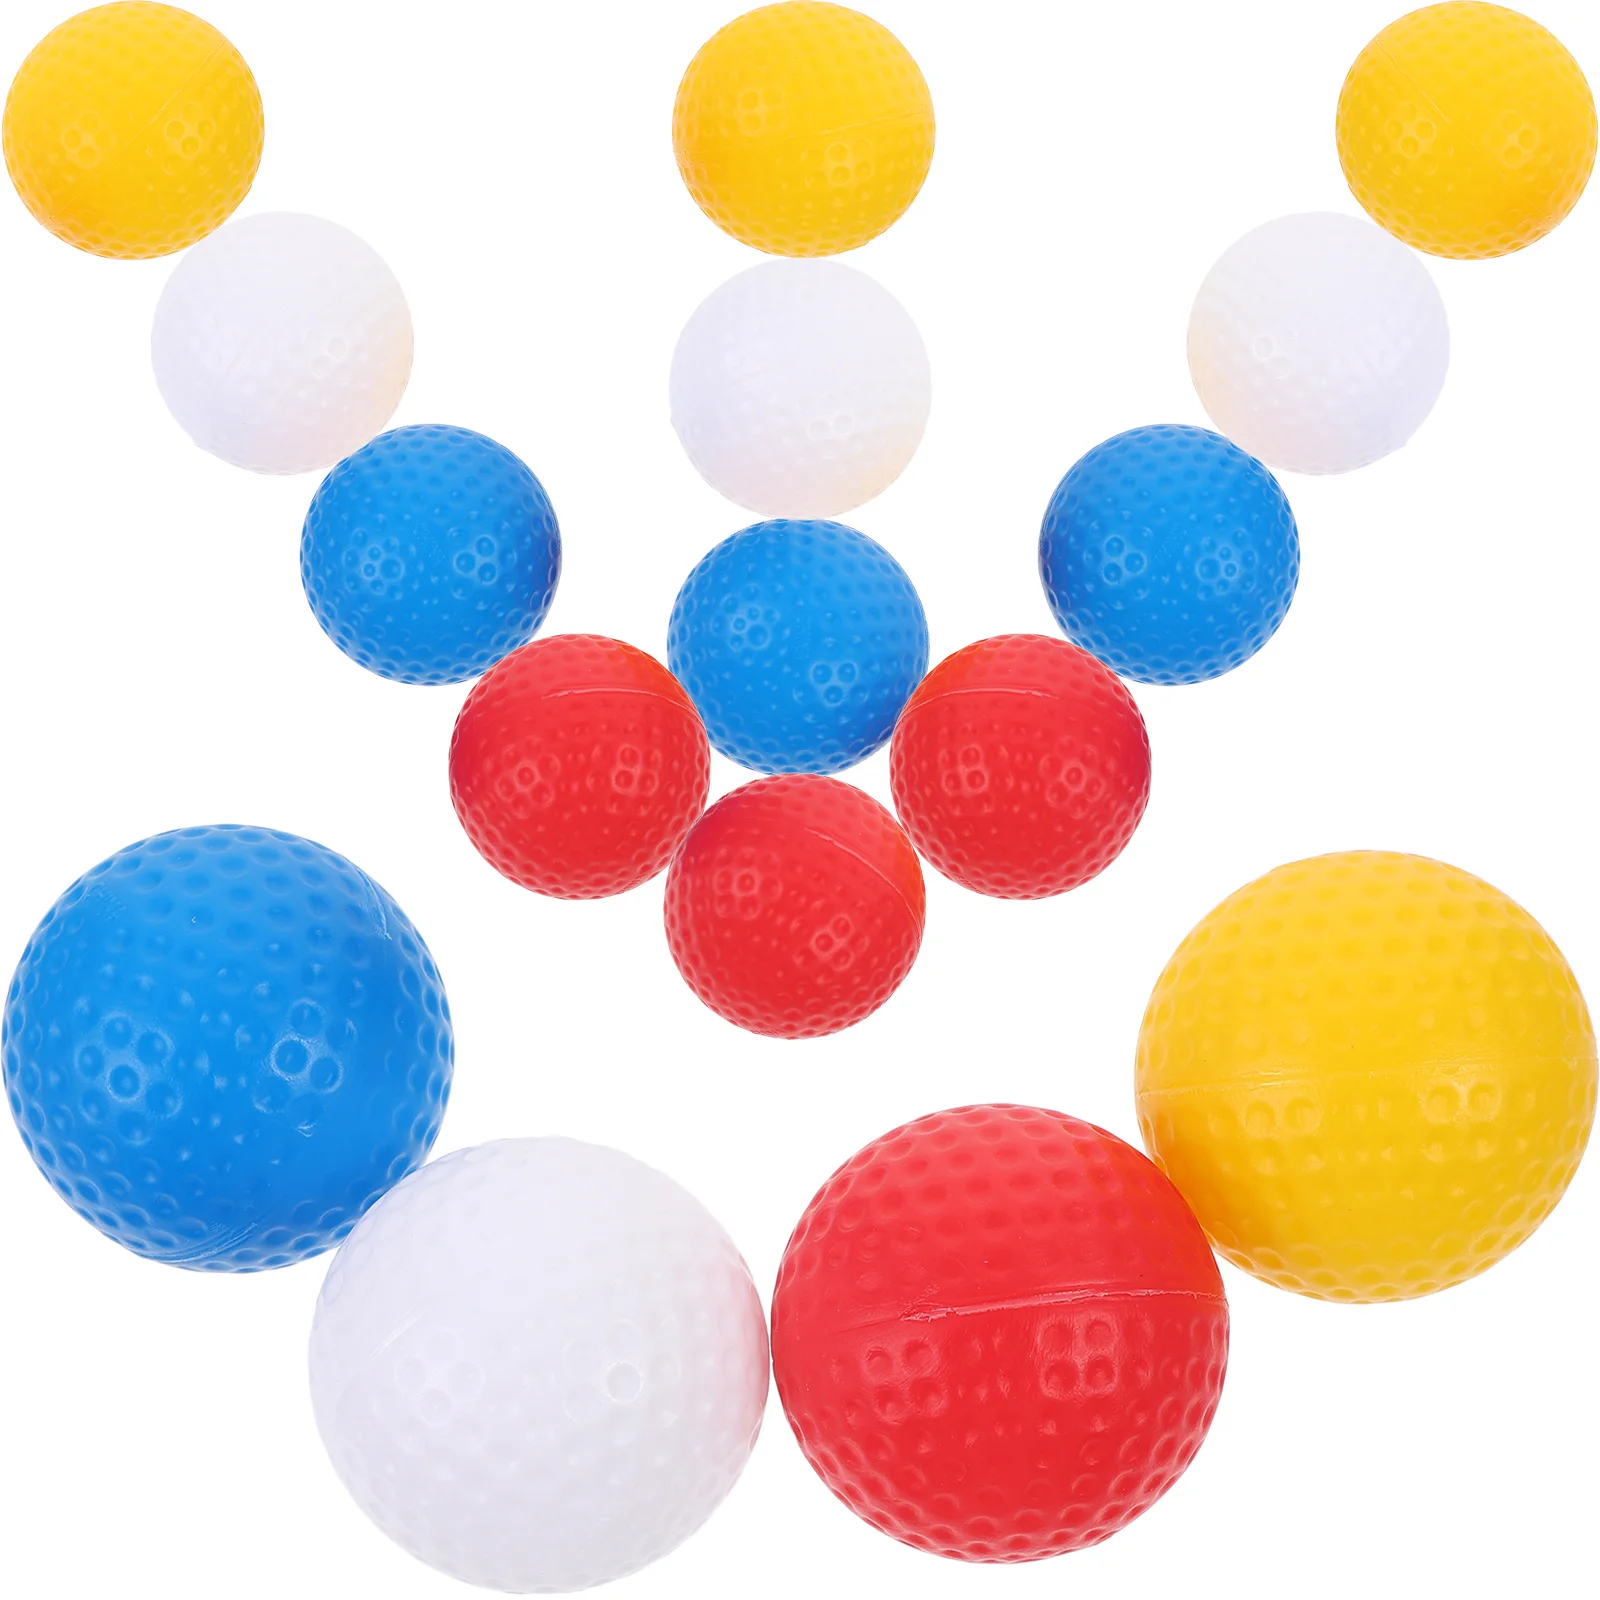 Мячи для игры в гольф, Цветные мячи для гольфа, маленькие мячи для гольфа, портативные мячи для игры в гольф профессиональные красные и синие капельные мячи для гольфа 1 дюжина